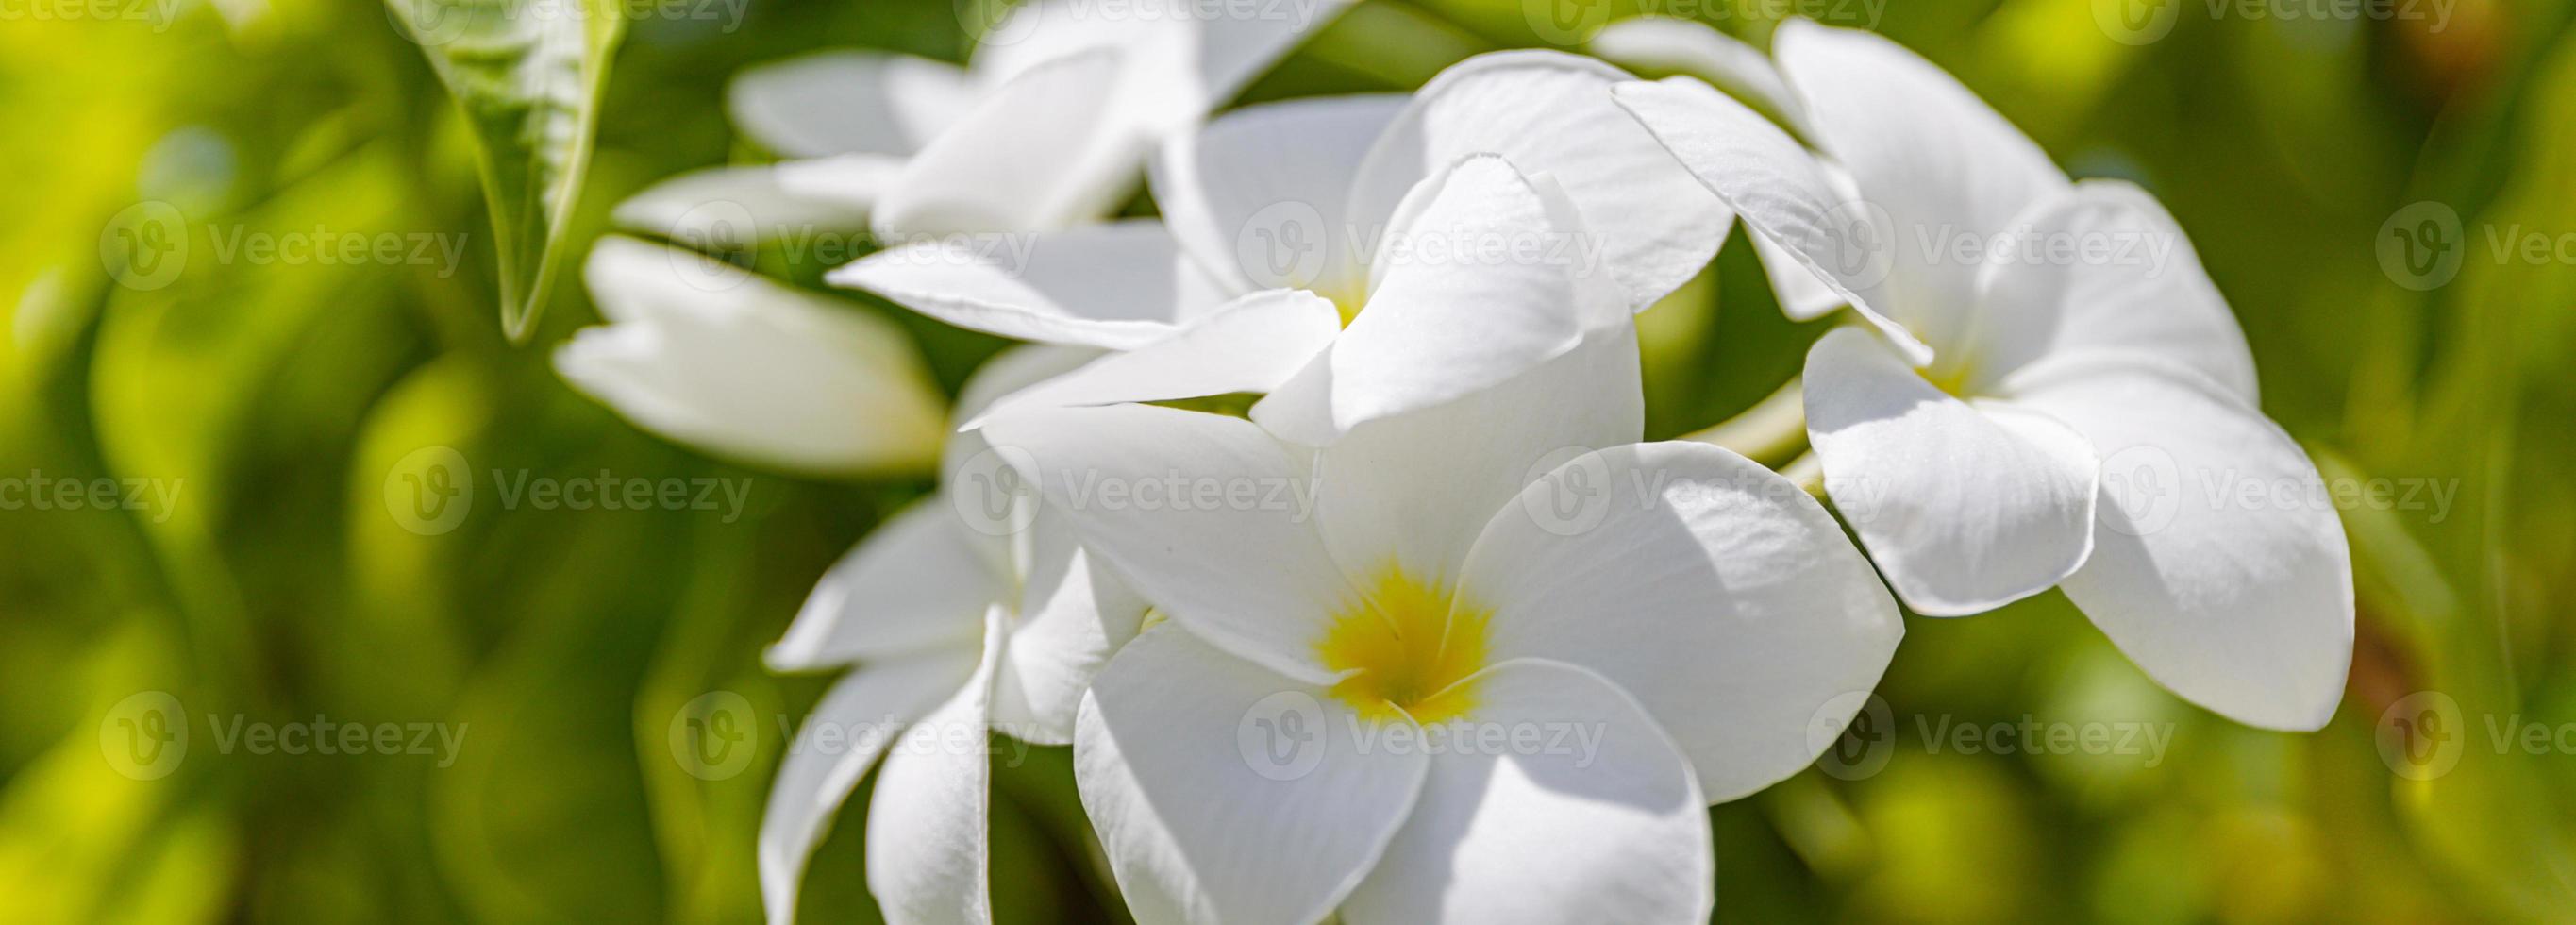 flores de plumeria brancas e amarelas cacho de flores de perto, folhas verdes turva fundo bokeh, galho de árvore de frangipani florescendo, flor tropical exótica em flor, belo arranjo floral natural foto